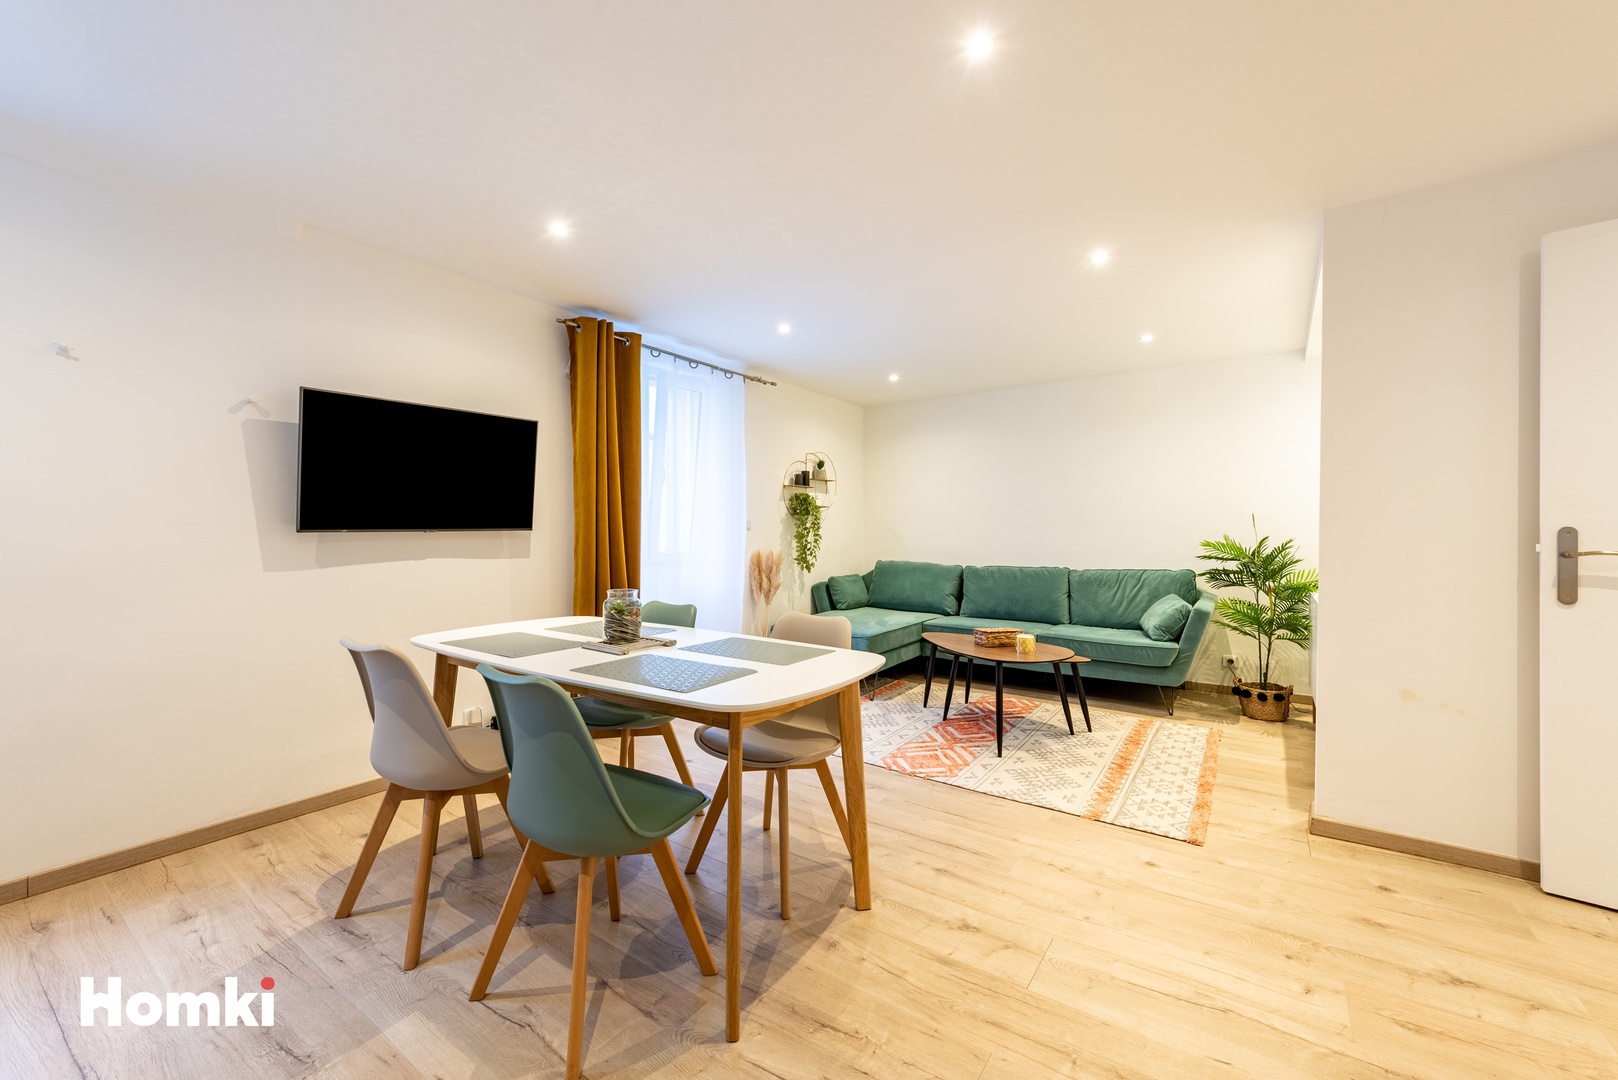 Homki - Vente Appartement  de 39.0 m² à Cannes 06400